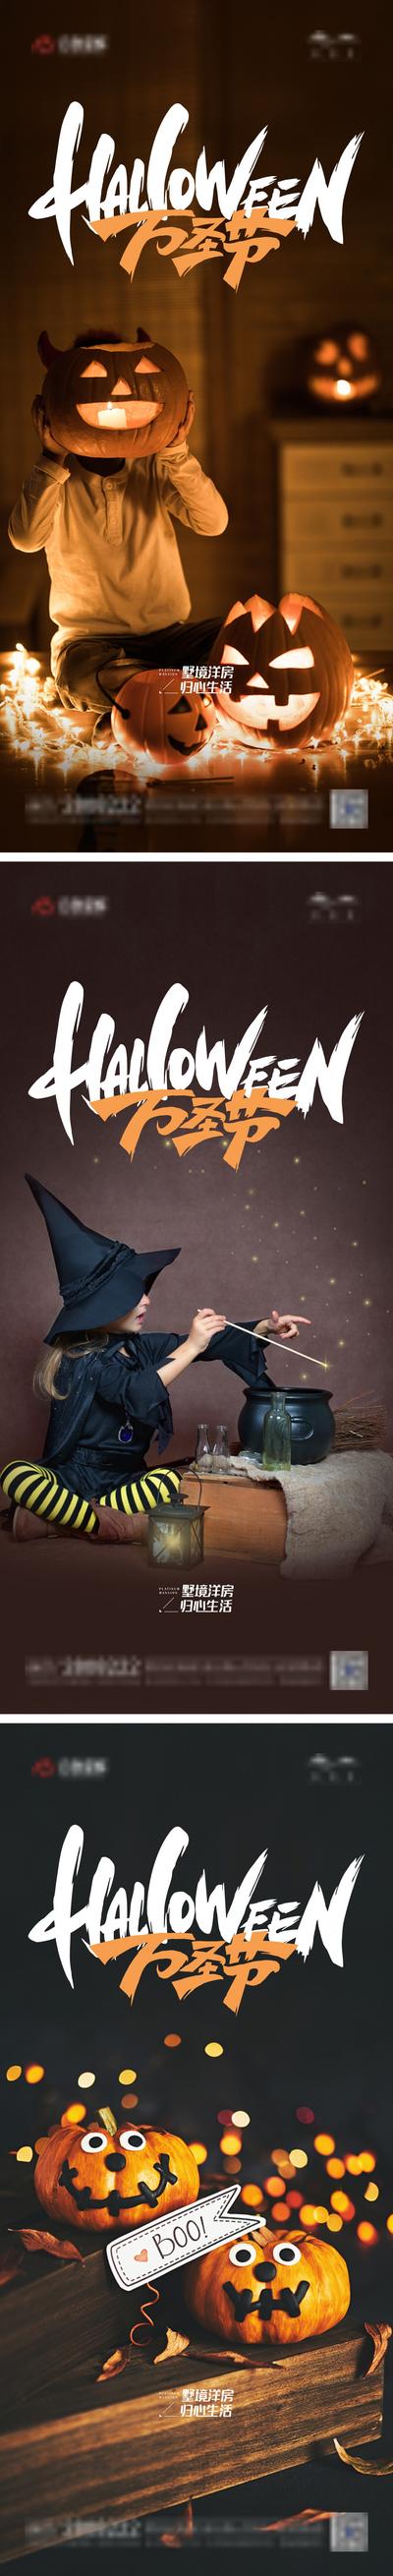 南门网 海报 公历节日 万圣节 南瓜灯 系列 女巫